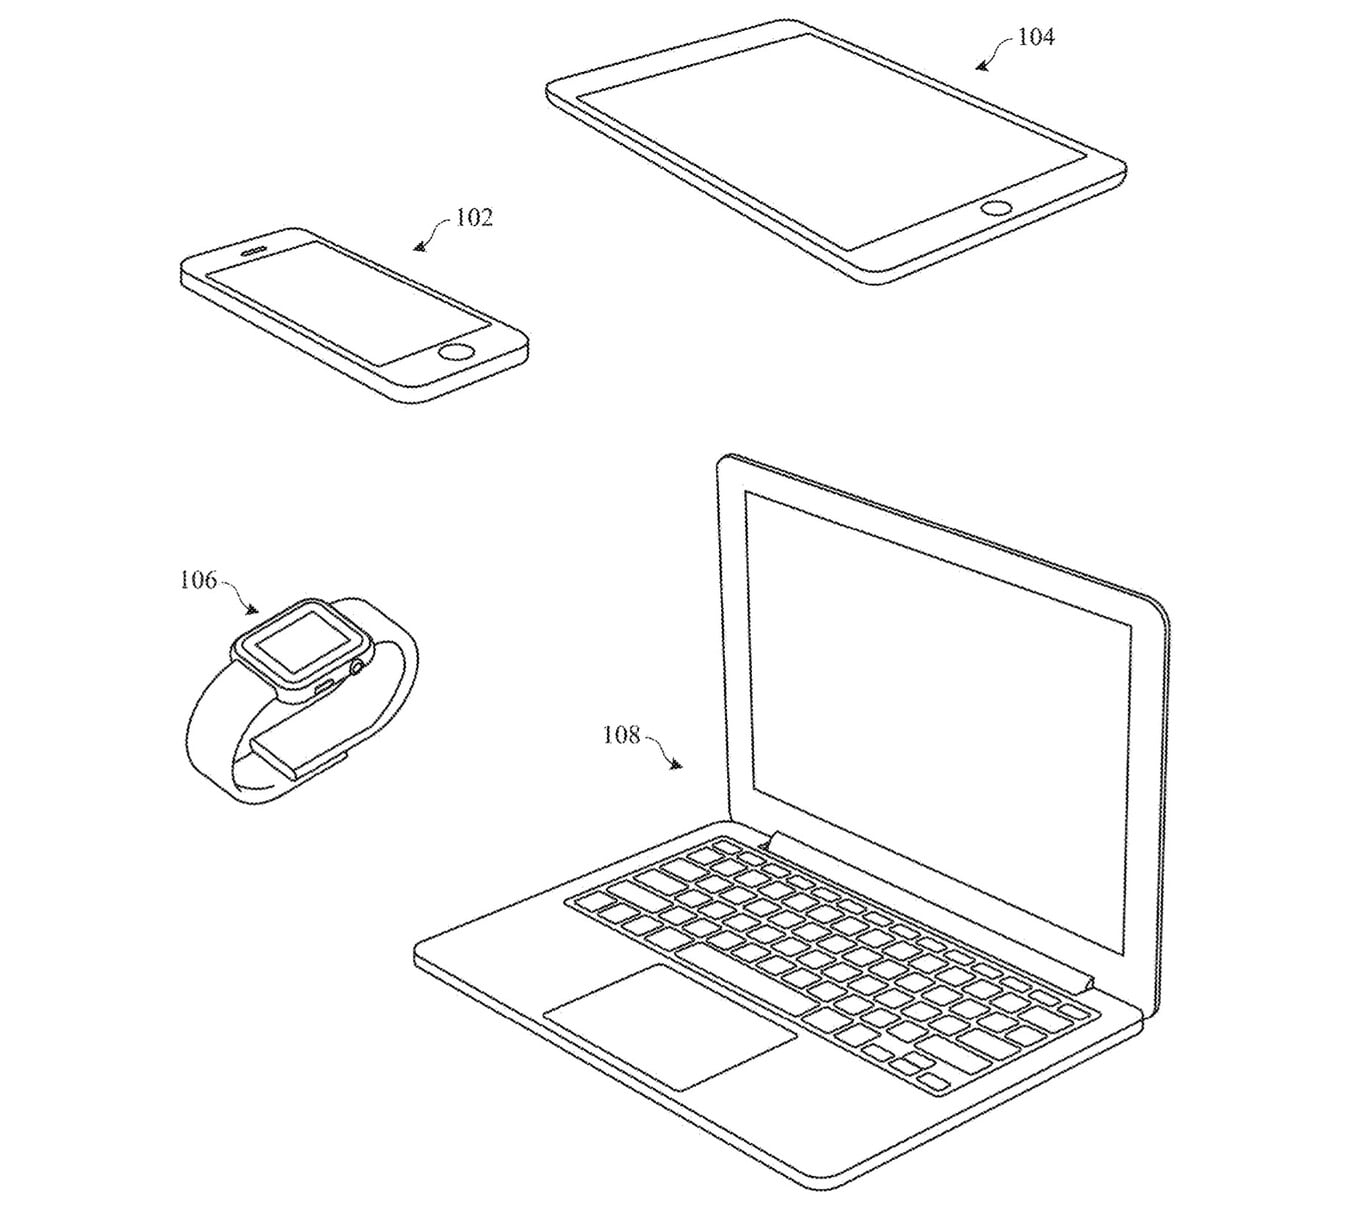 Apple's new patent reveals future titanium iPhone, Mac and iPad plans